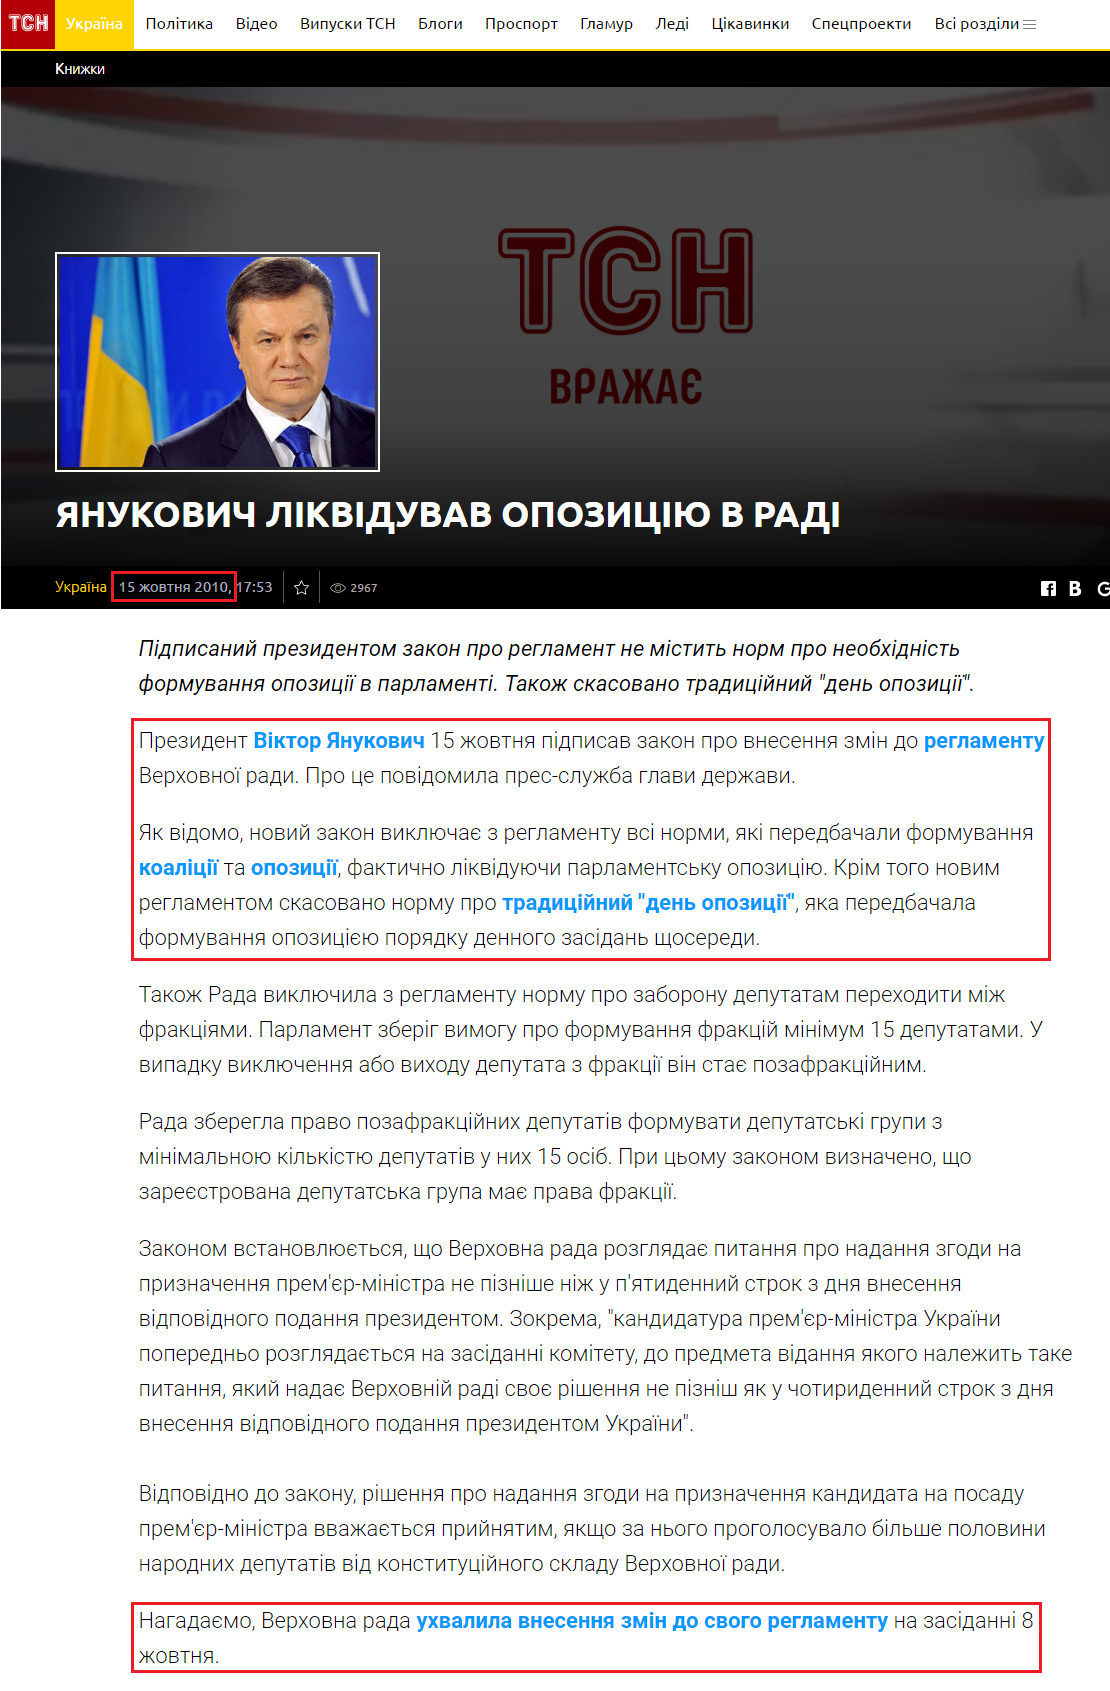 https://tsn.ua/ukrayina/yanukovich-pidpisav-zakon-pro-likvidaciyu-opoziciyi-v-radi.html